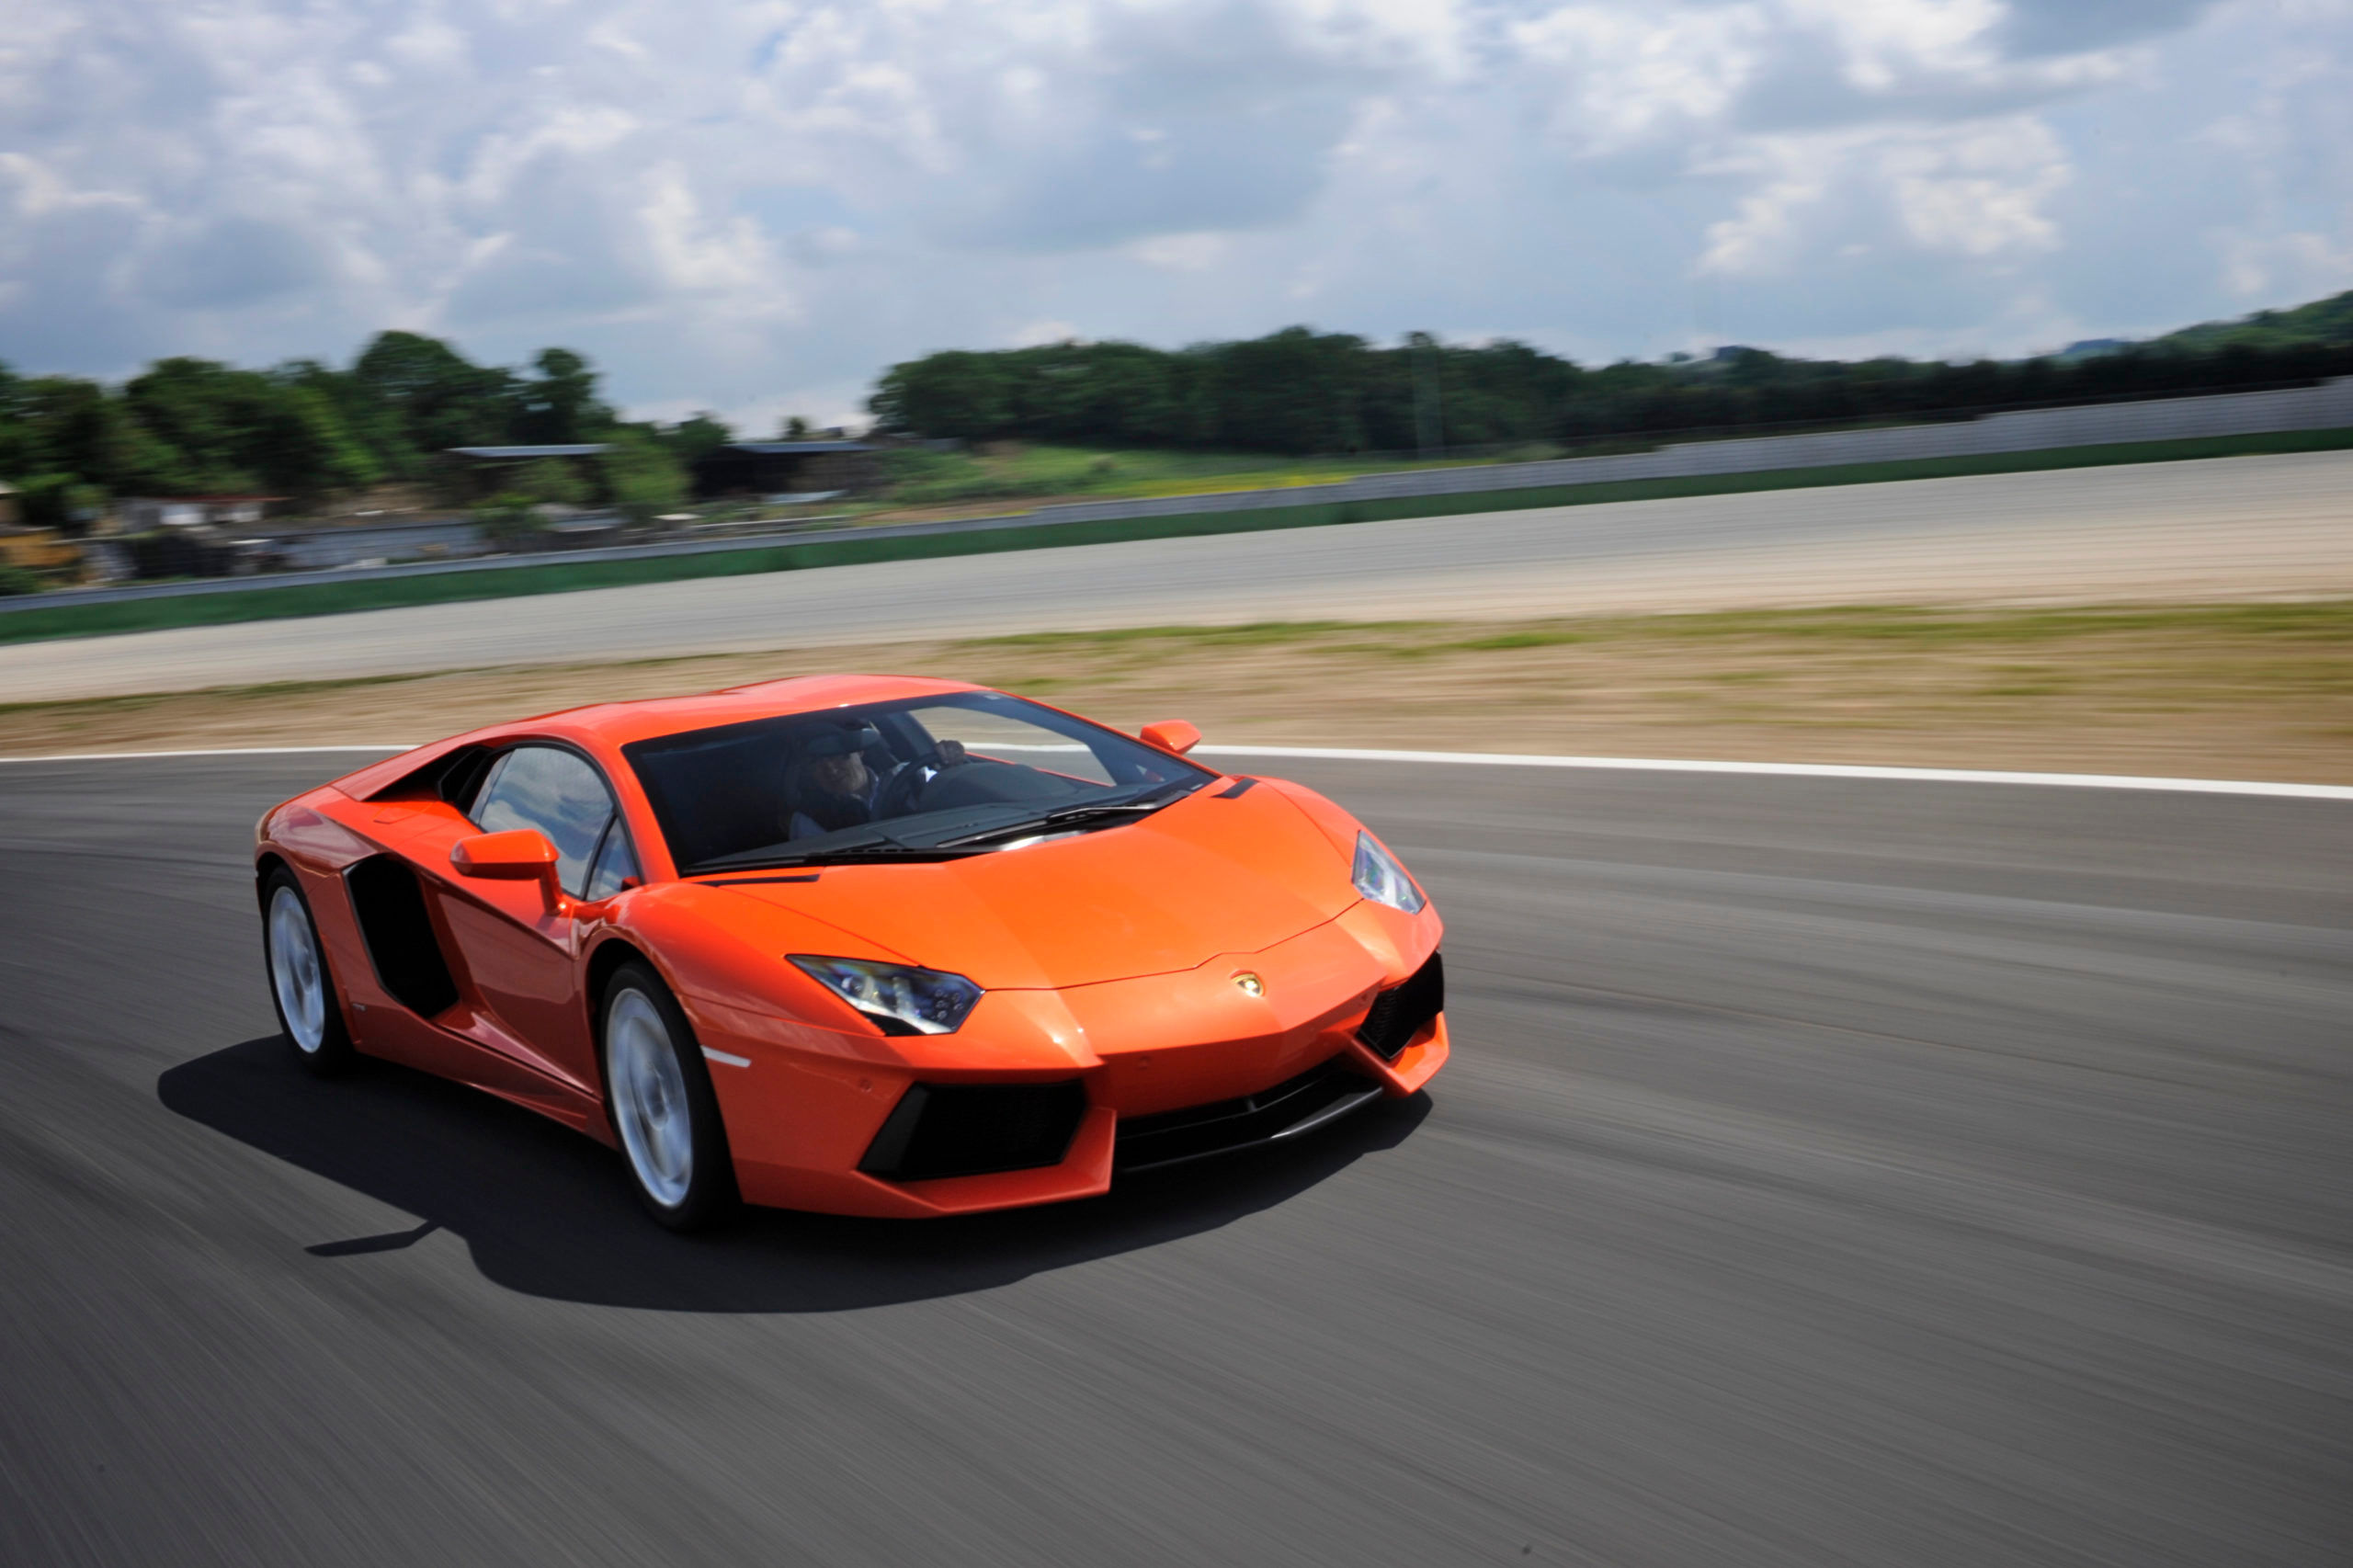 Đừng bỏ lỡ lịch sử huyền thoại của Lamborghini Aventador. Từ ngày ra đời đến hiện tại, chiếc xe đã được thay đổi và cải tiến nhiều lần để trở thành một trong những siêu xe được ưa chuộng nhất trên thế giới.